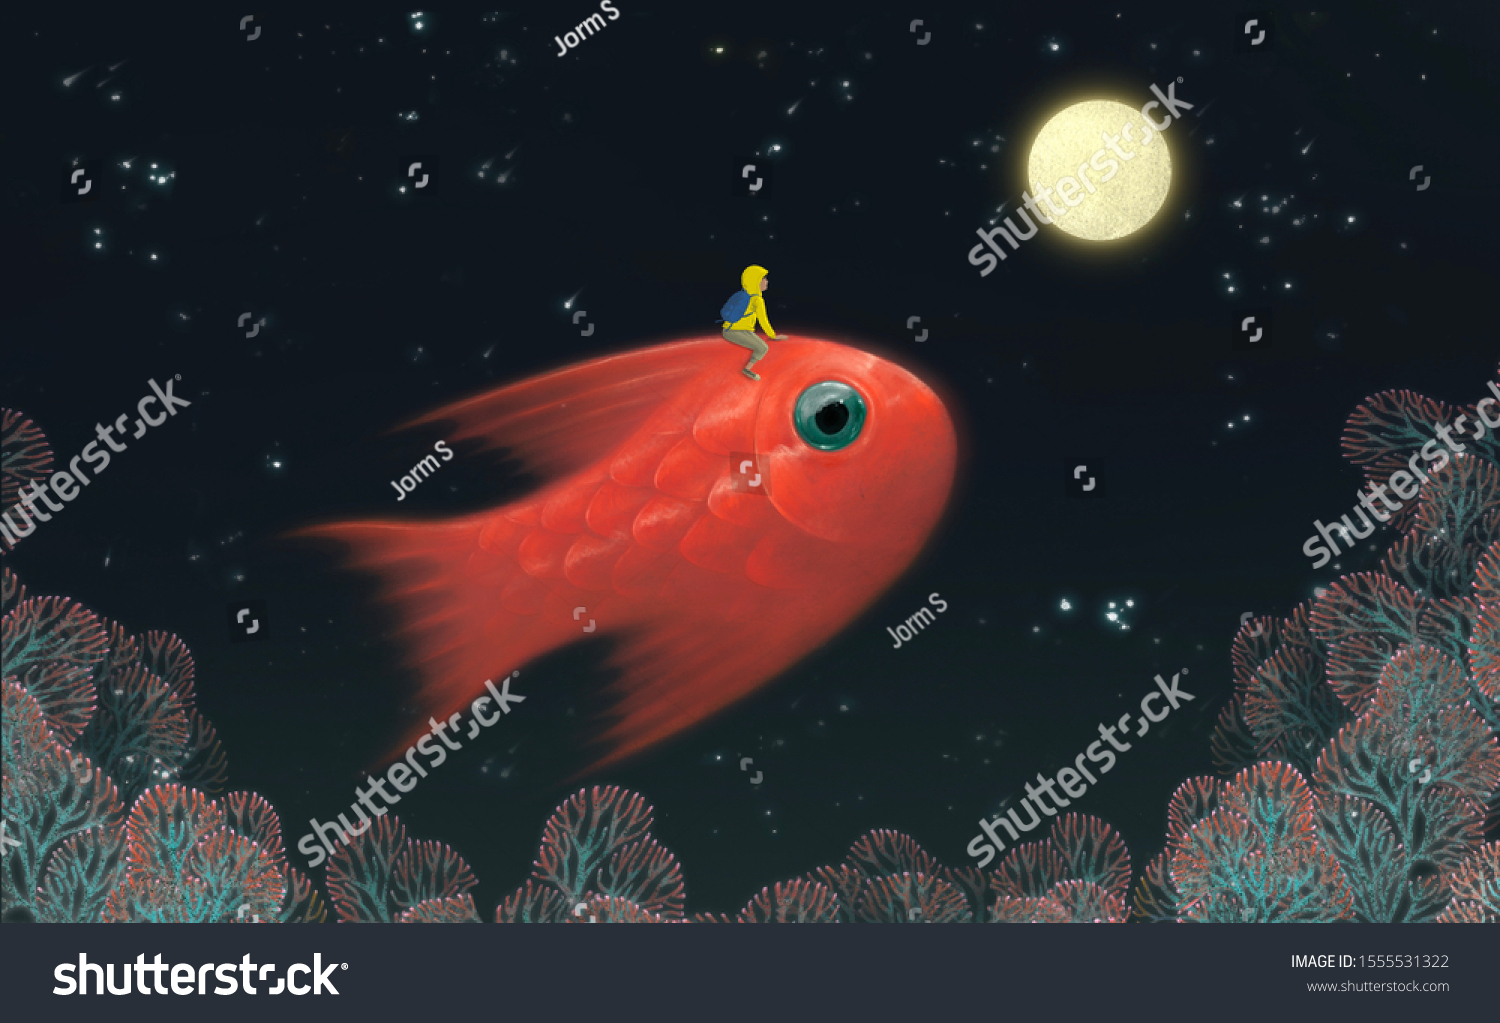 可愛い巨大魚を月に乗せる空想のシーンボーイ 超現実的な絵のイラスト アート 自由のコンセプト のイラスト素材